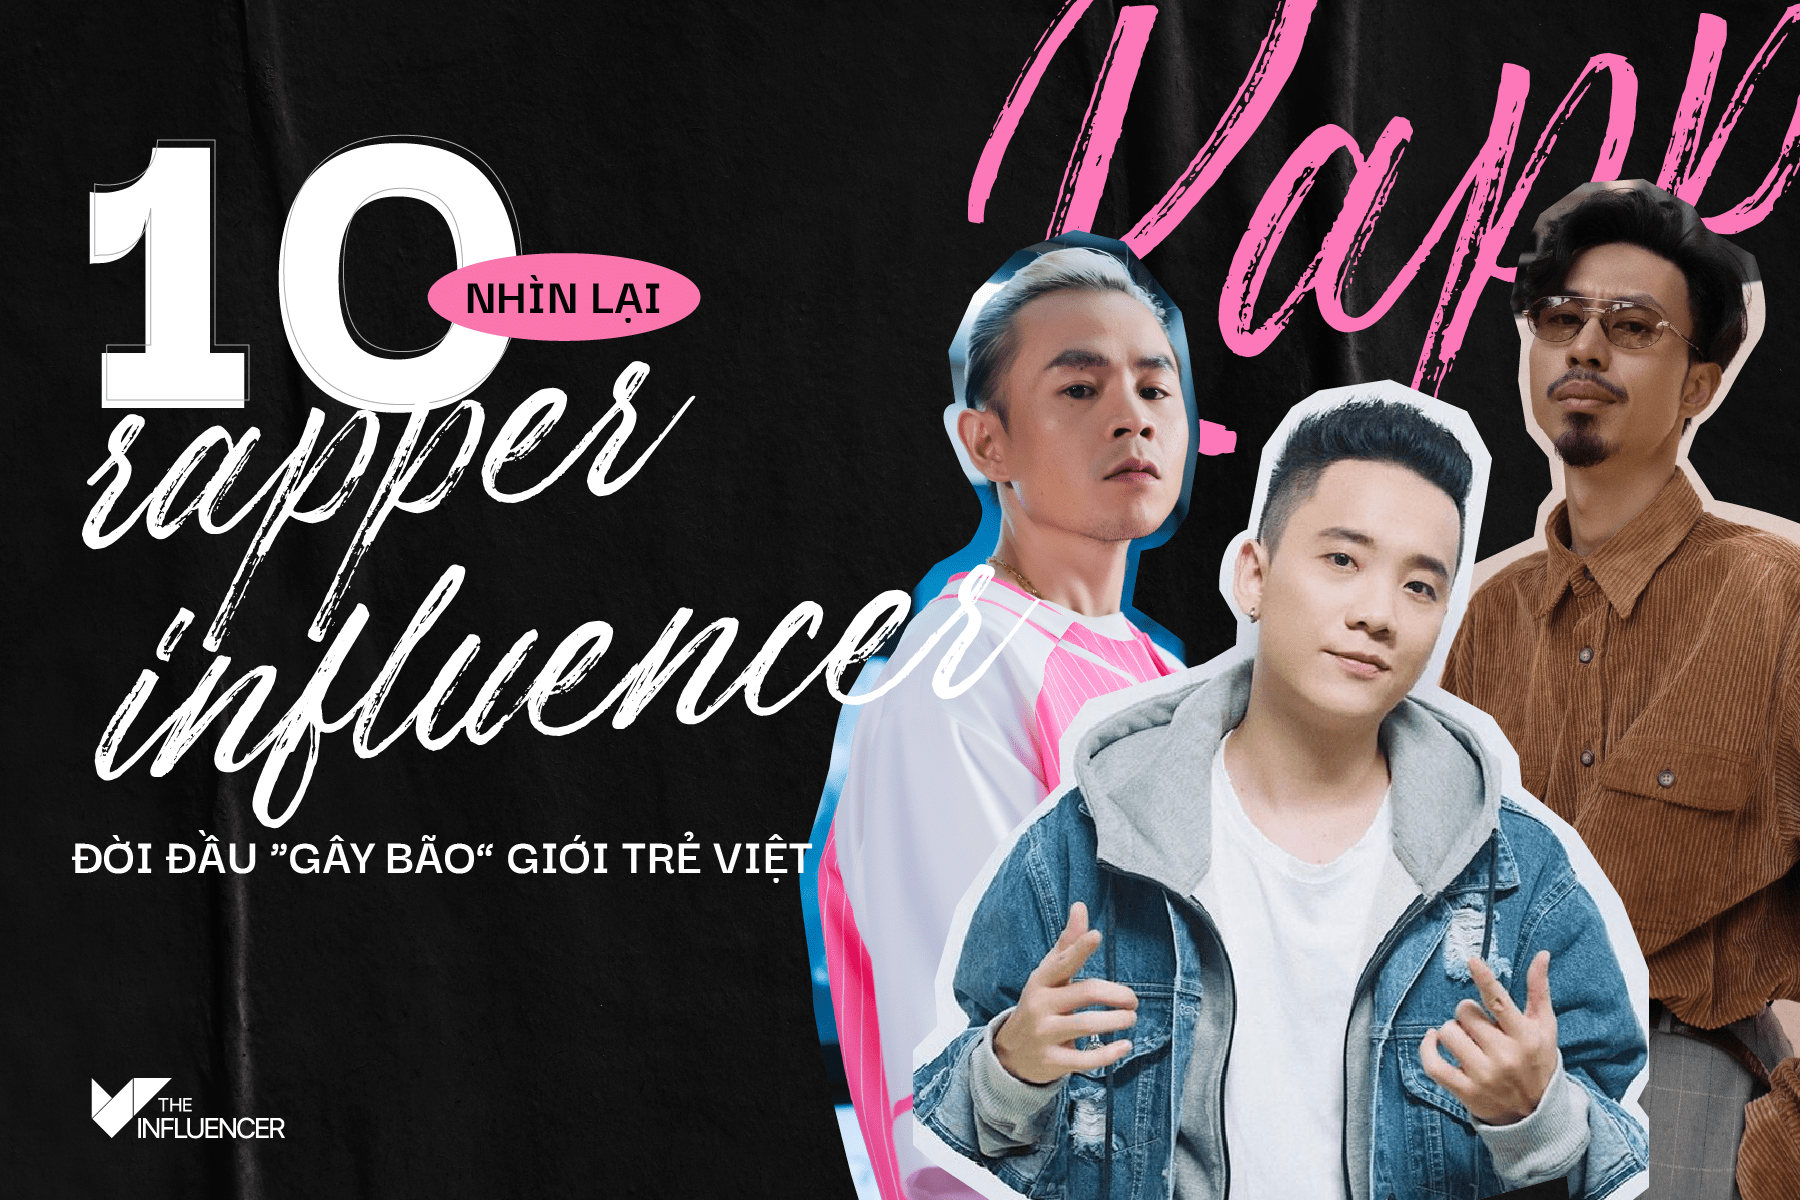 #Toplist: Nhìn lại 10 rapper influencer đời đầu “gây bão” giới trẻ Việt